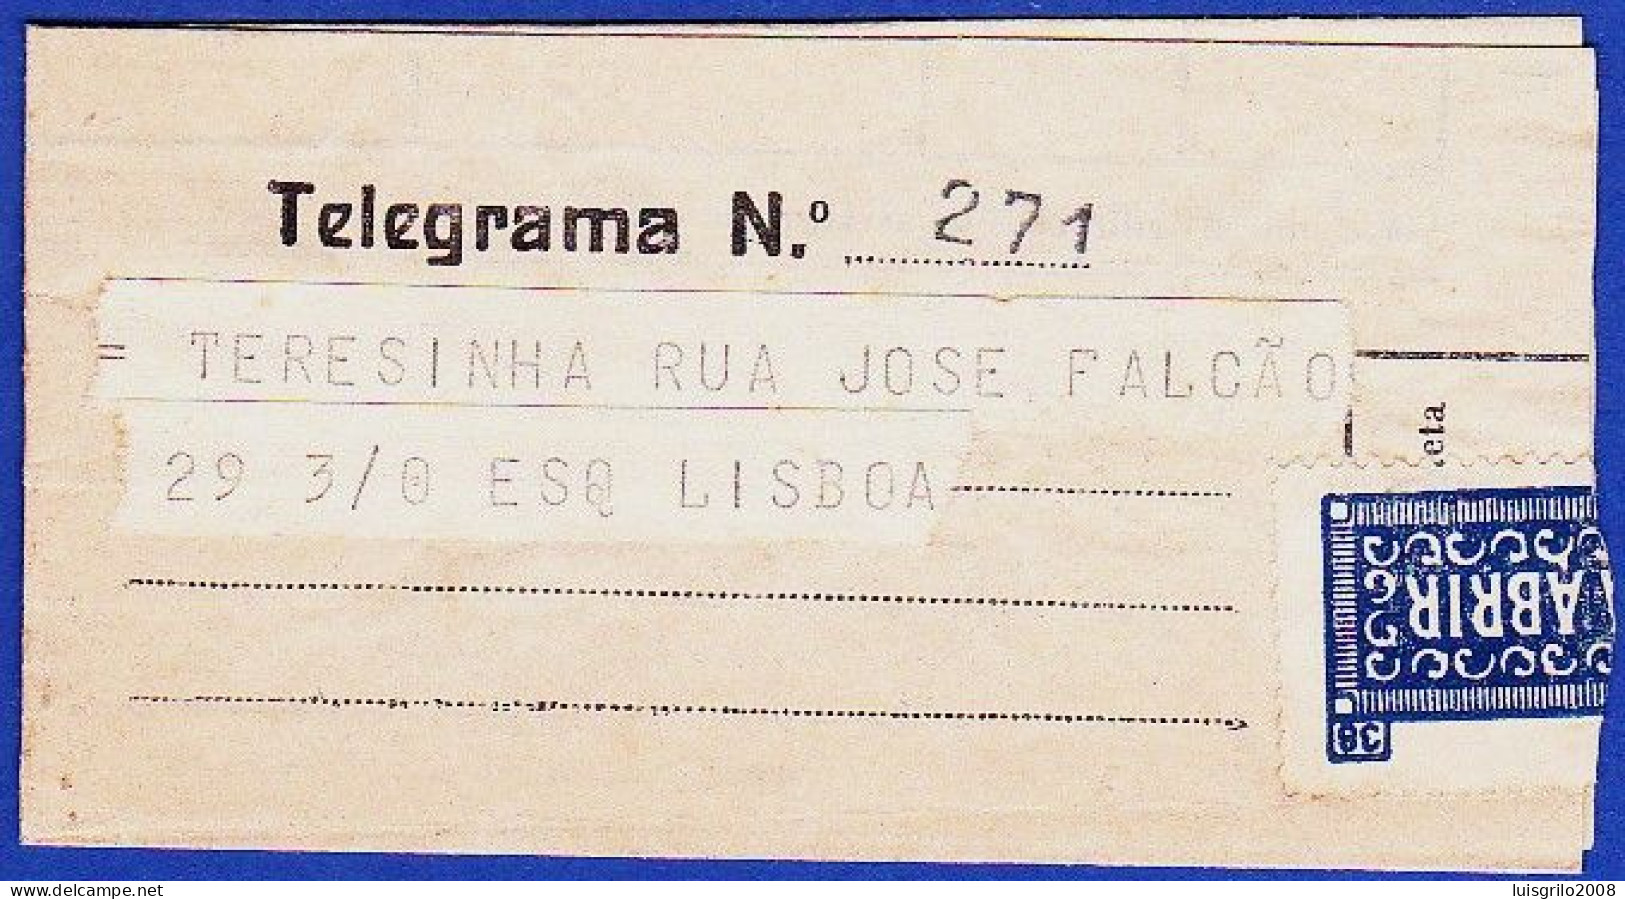 Telegram/ Telegrama - Chiado, Lisboa > Alameda, Lisboa -|- Postmark - D. Afonso Henriques. Lisboa. 1954 - Covers & Documents